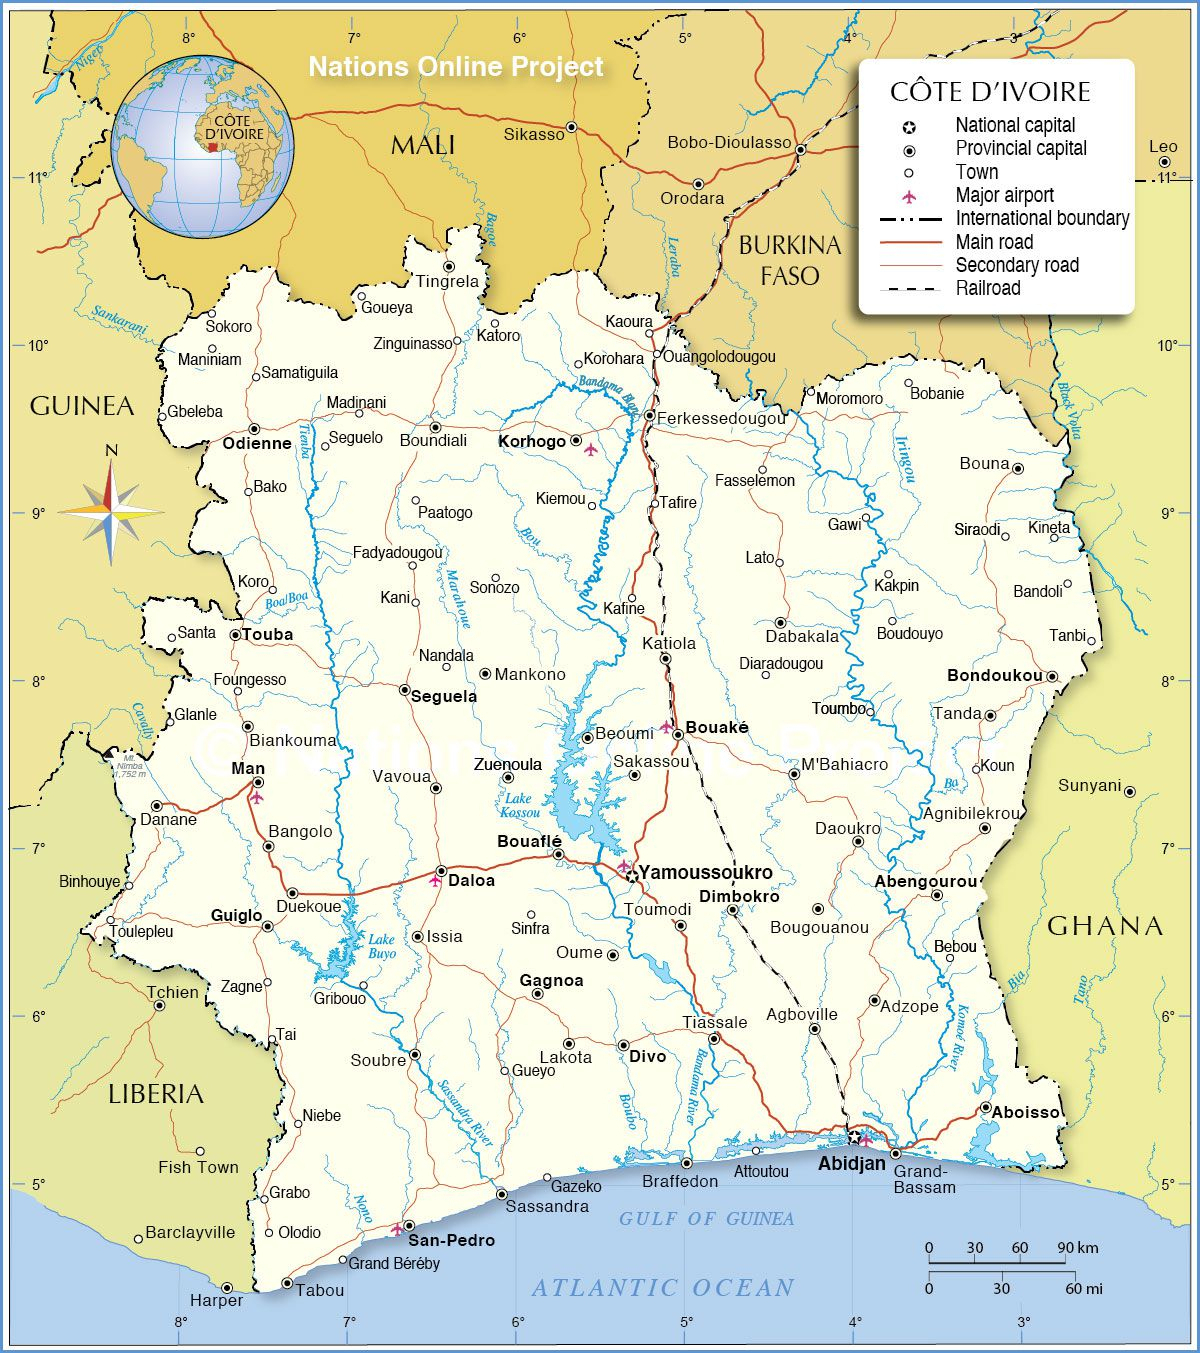 Carte De La Côte D'Ivoire - Routière, Administrative tout Carte Europe 2017